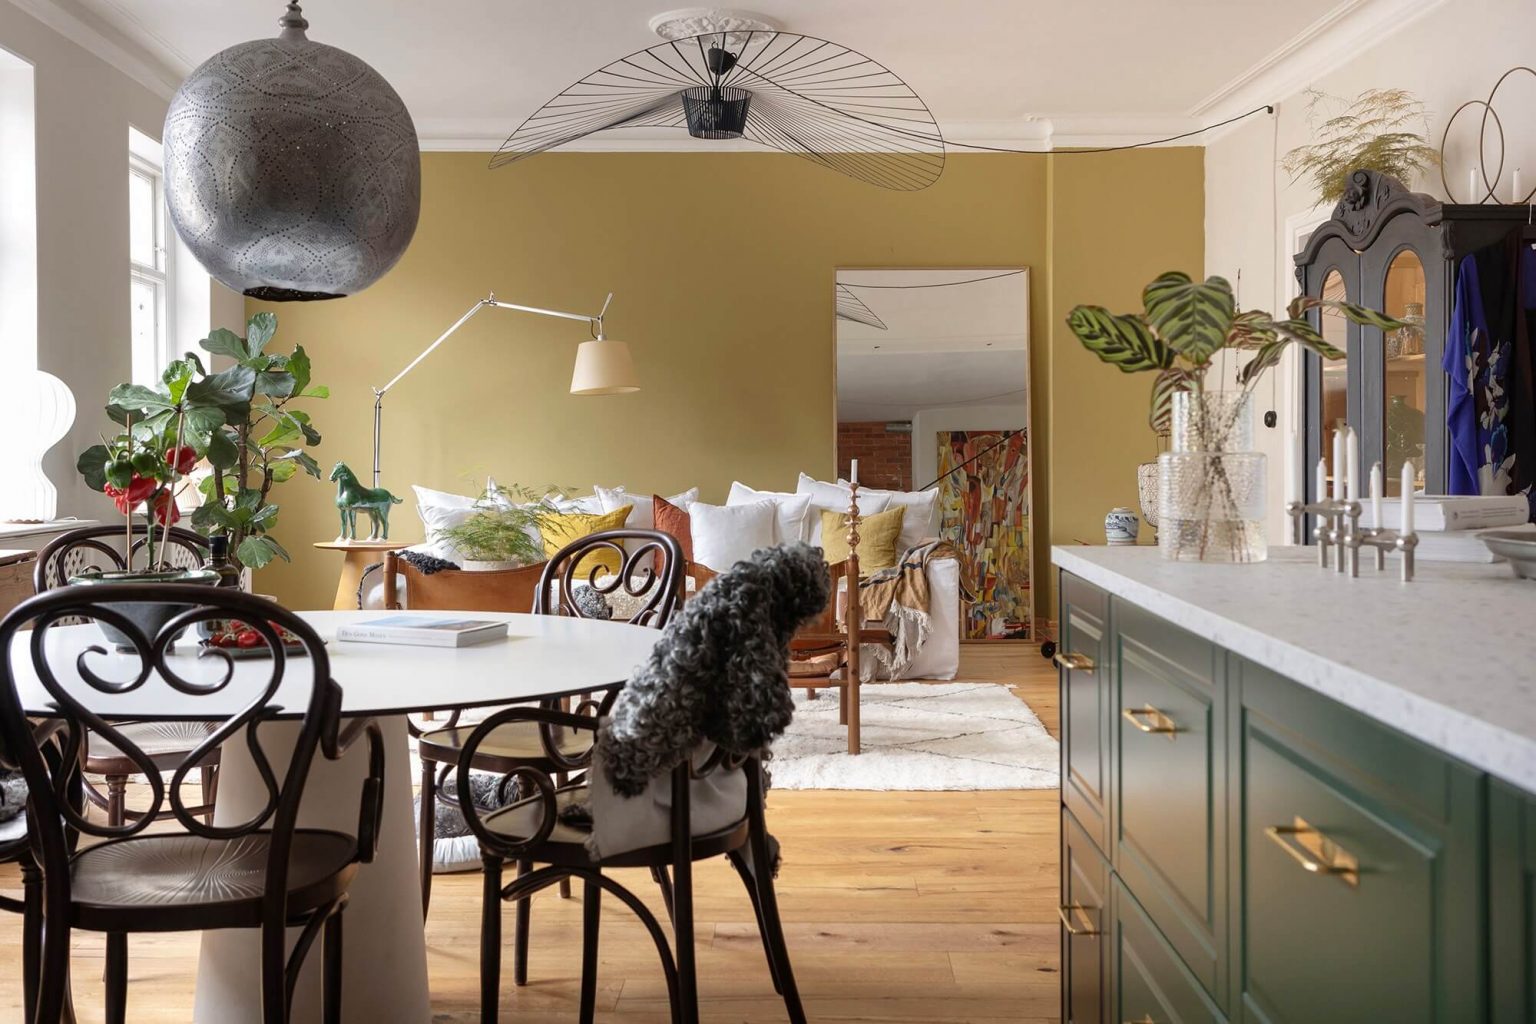 cuisine verte et salon jaune moutarde appartement décoration scandinave colorée